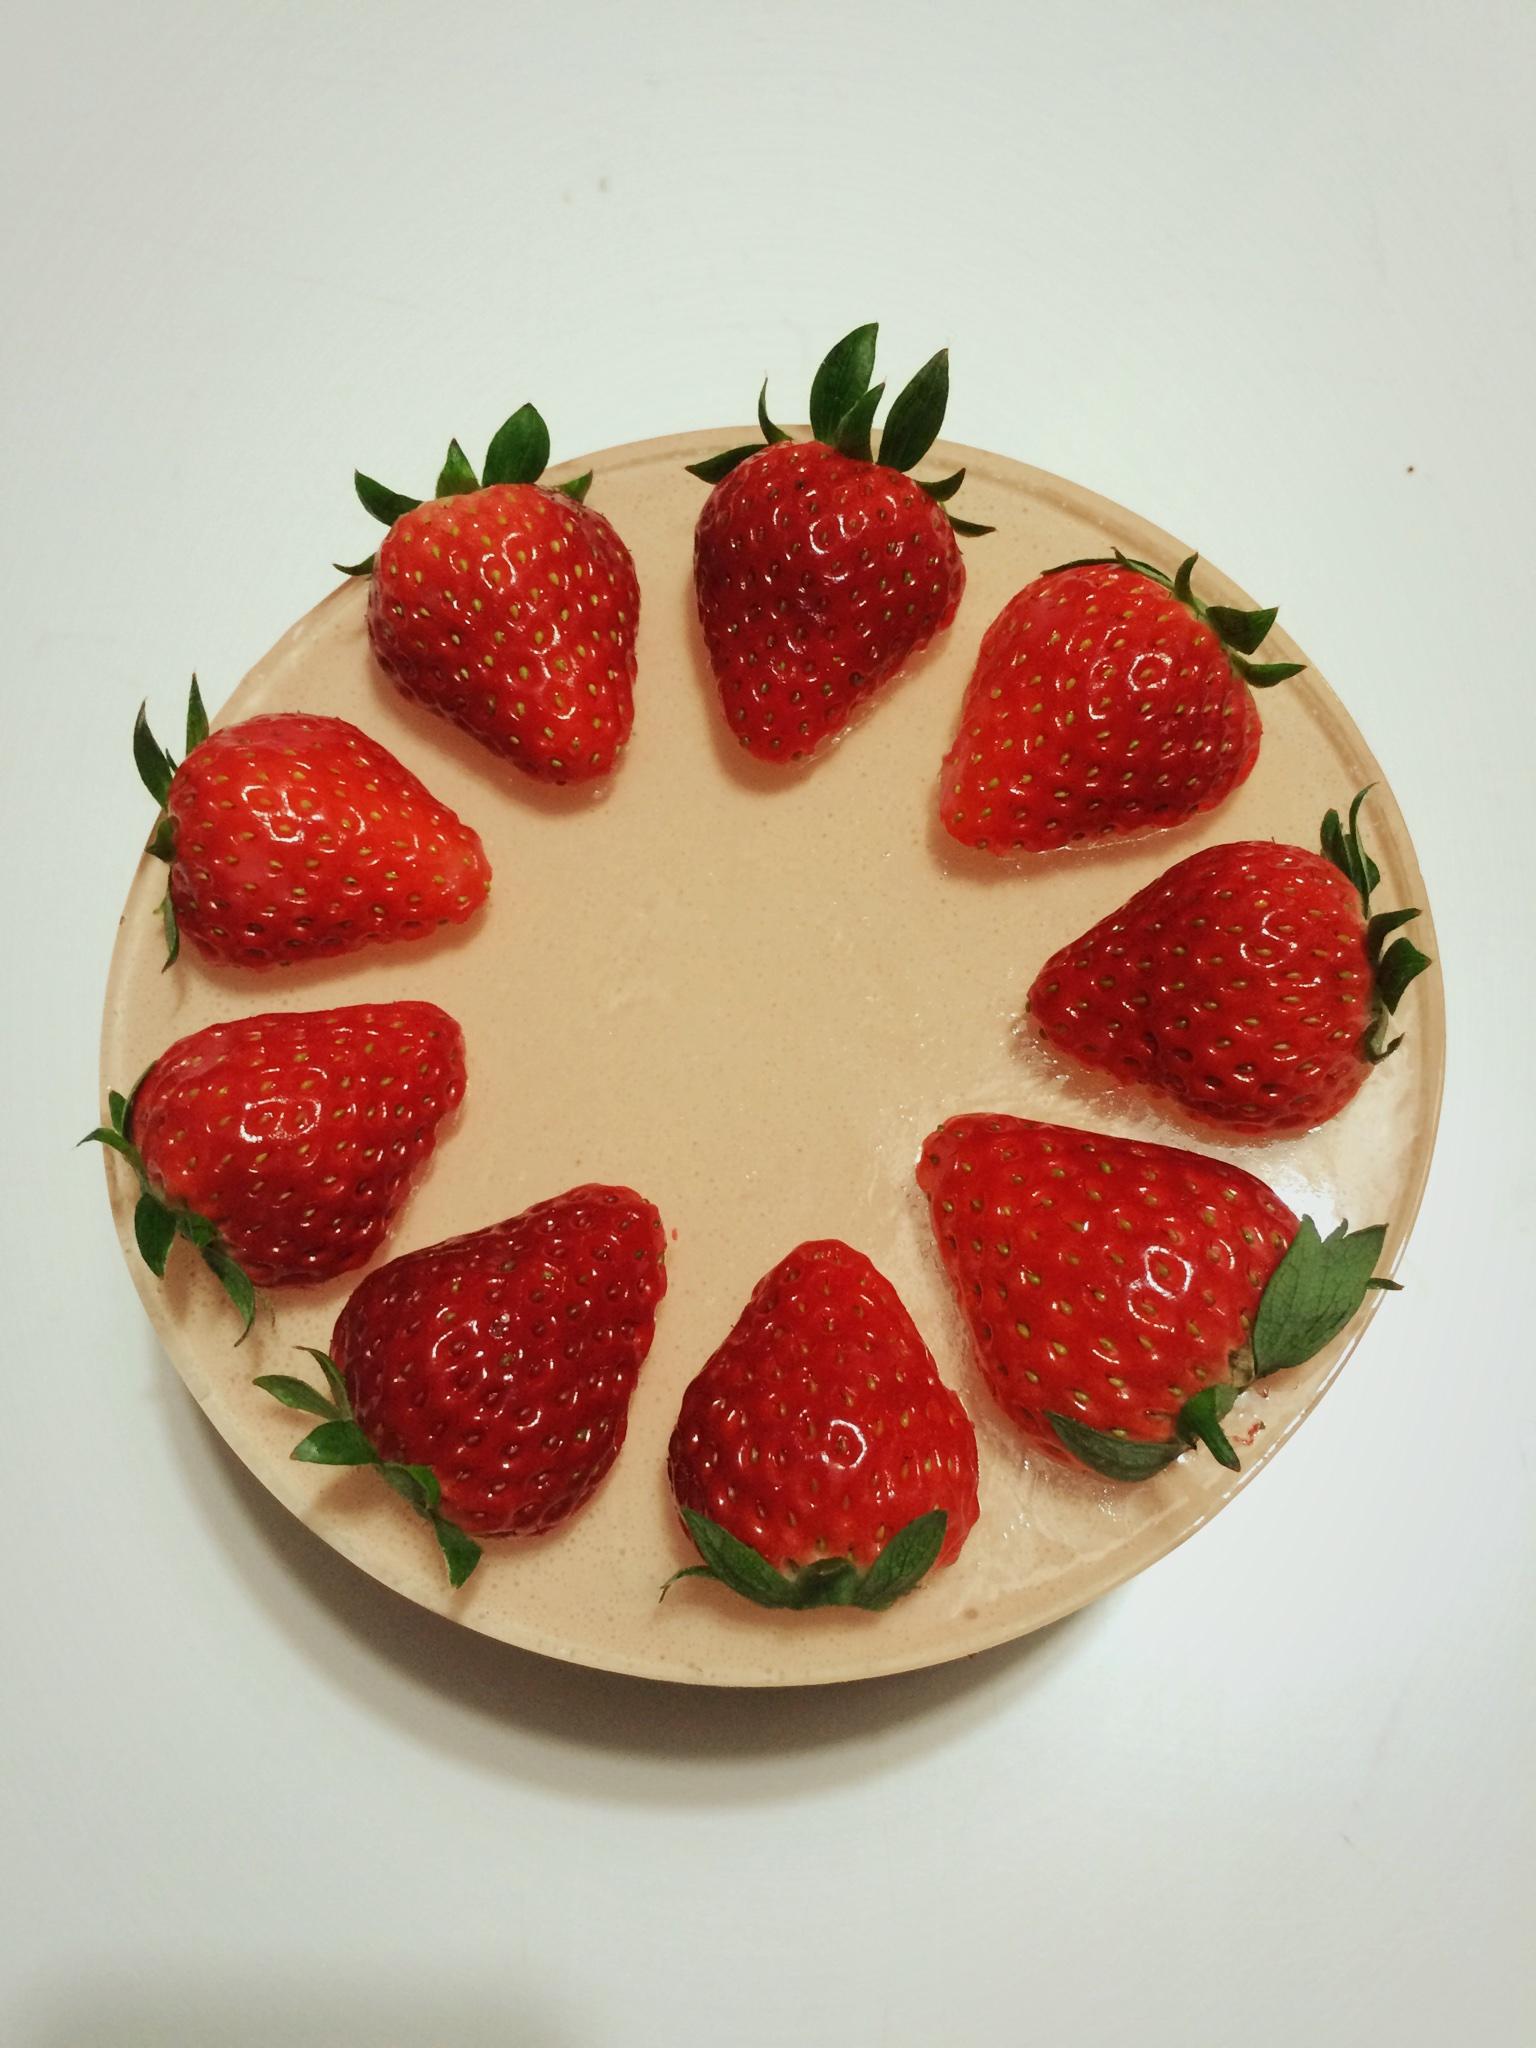 吃完这个再减肥的草莓芝士蛋糕